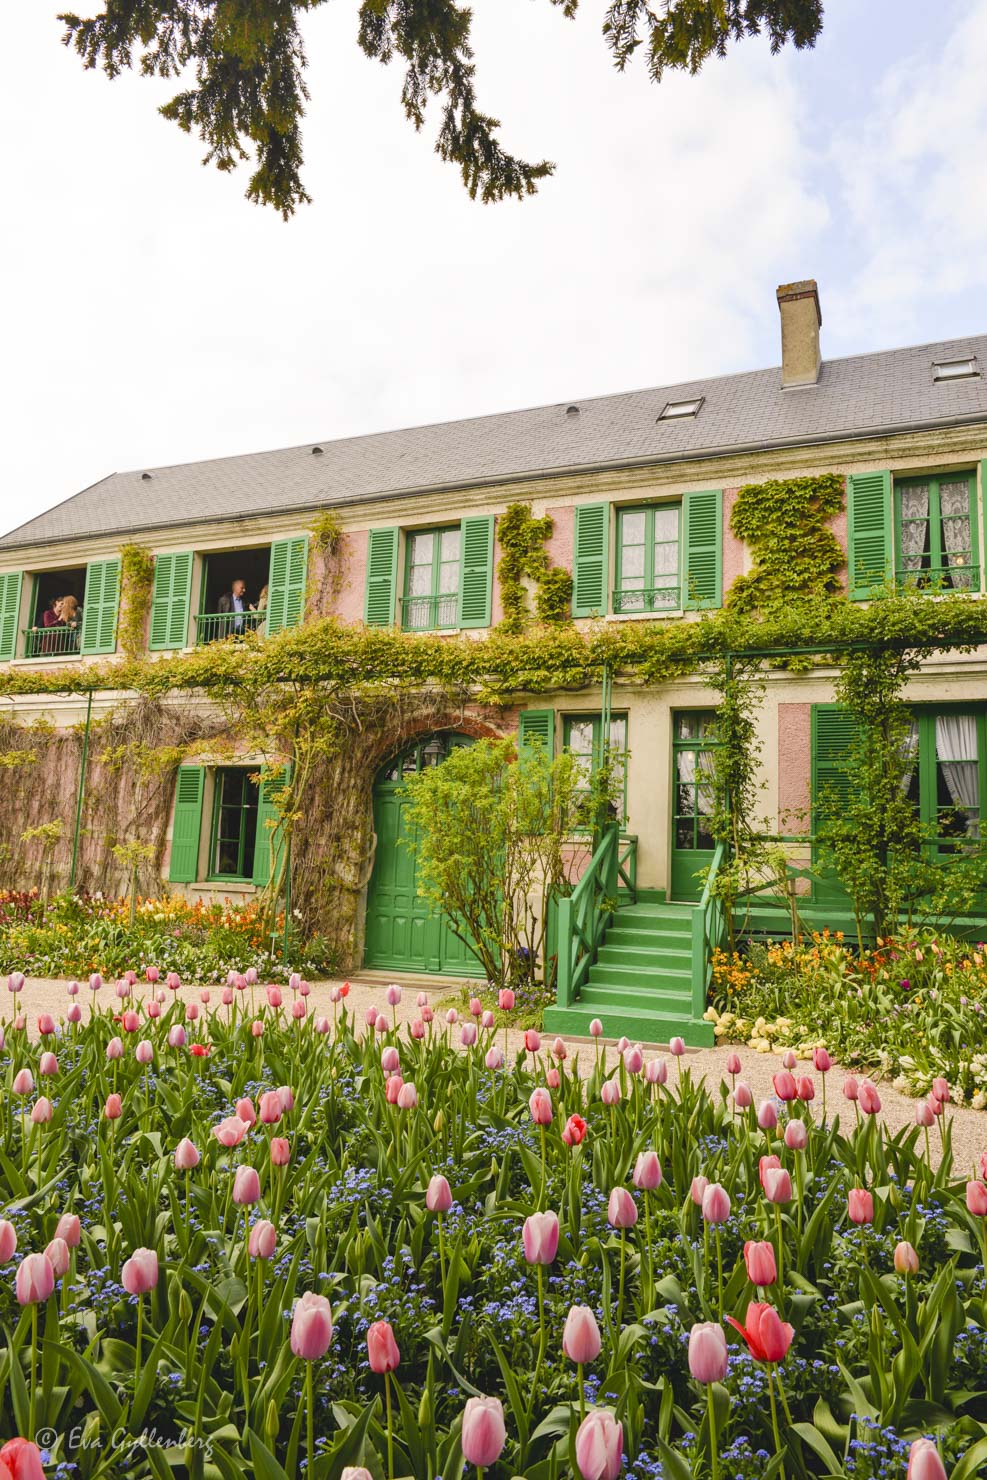 Monets trädgård i Giverny har ett rosa hus med gröna luckor och under våren blommar massor med tulpaner